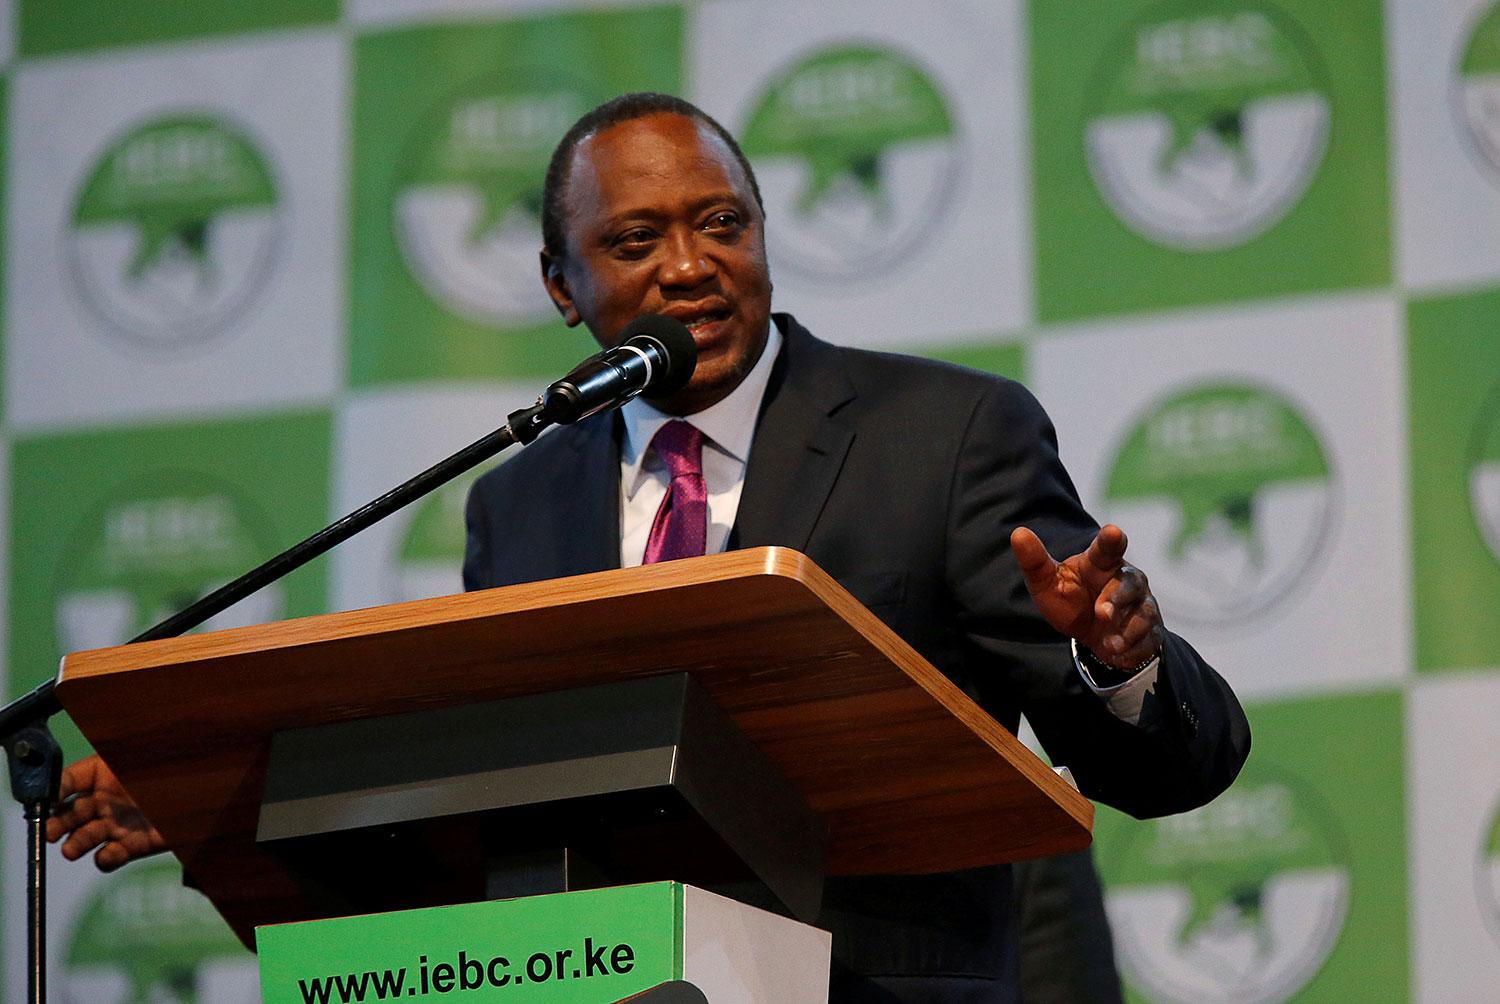 Uhuru Kenyattas seger i Kenyas presidentval ogiltigförklaras.